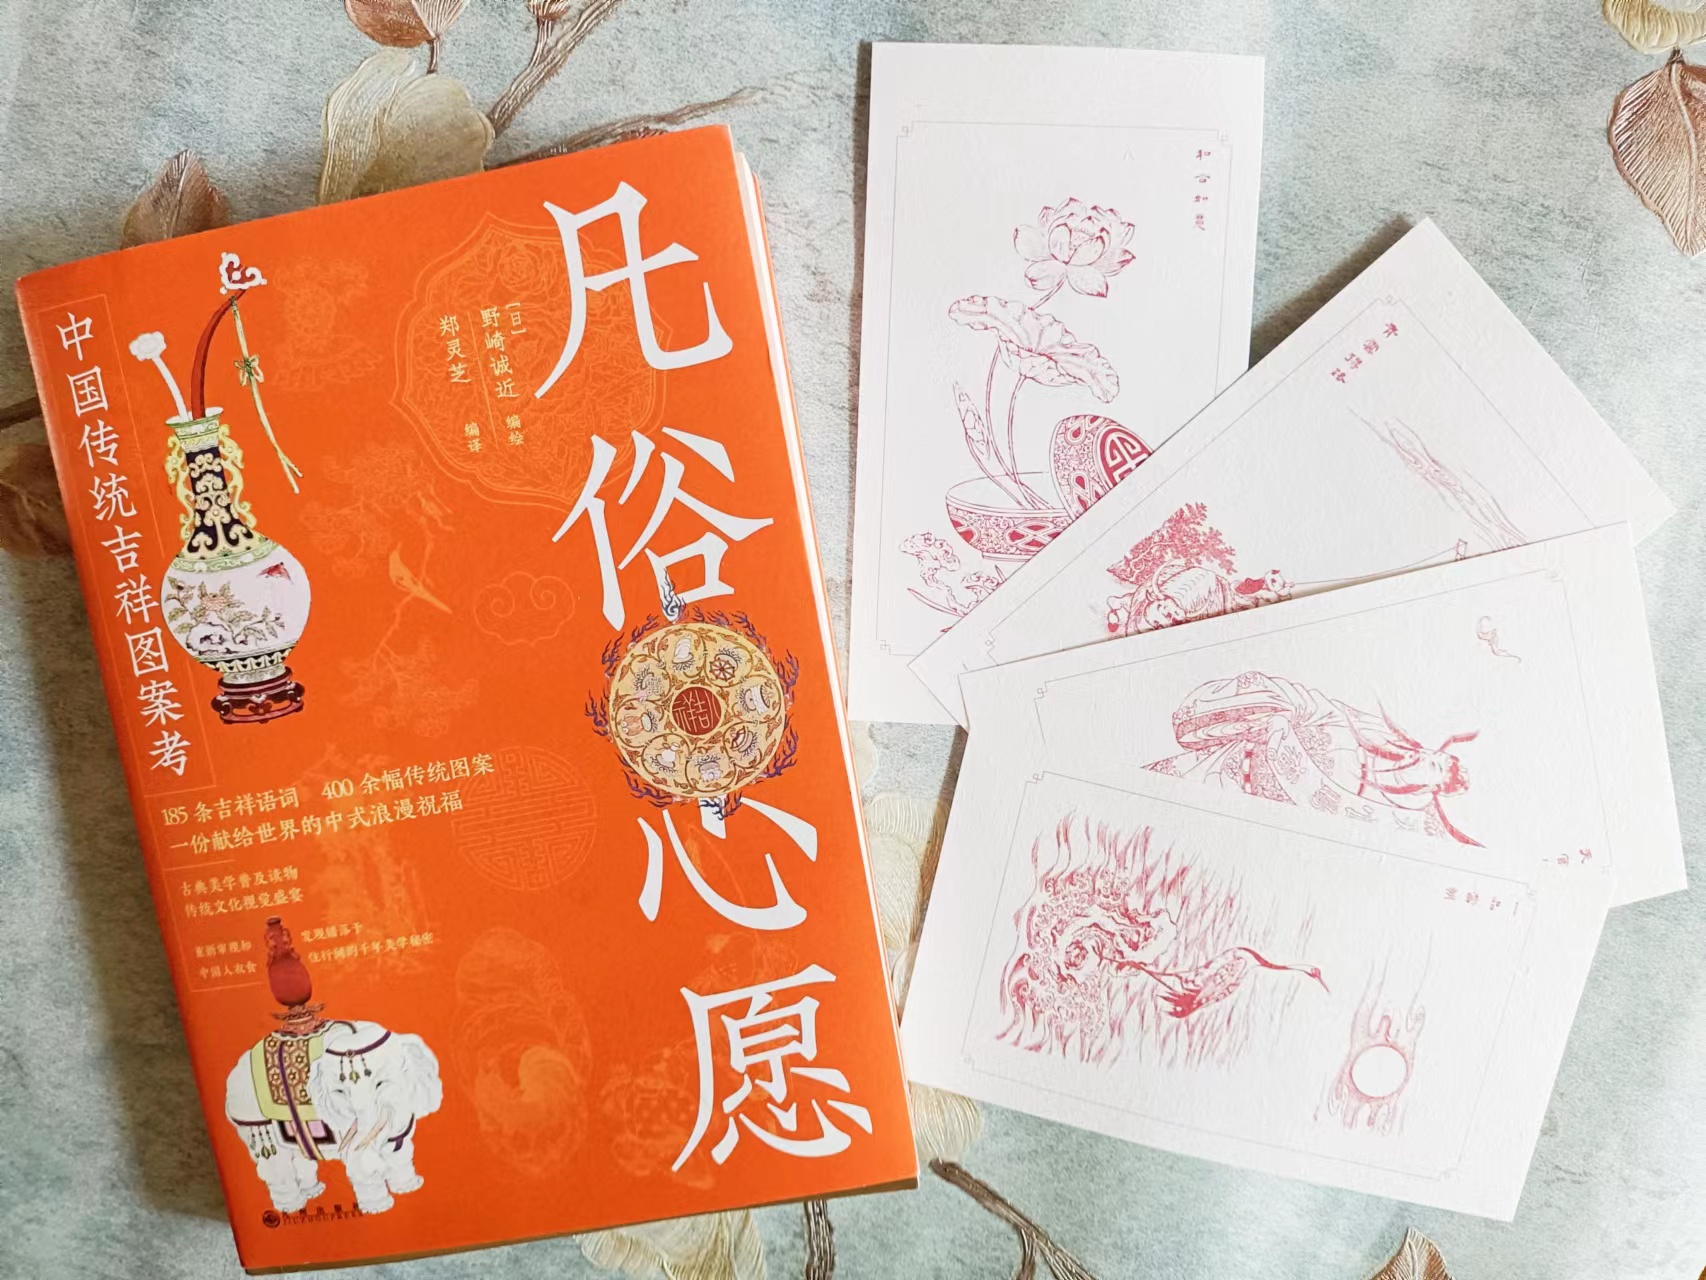 吉祥话大全《凡俗心愿》：185条吉祥话400余幅中国传统吉祥图案